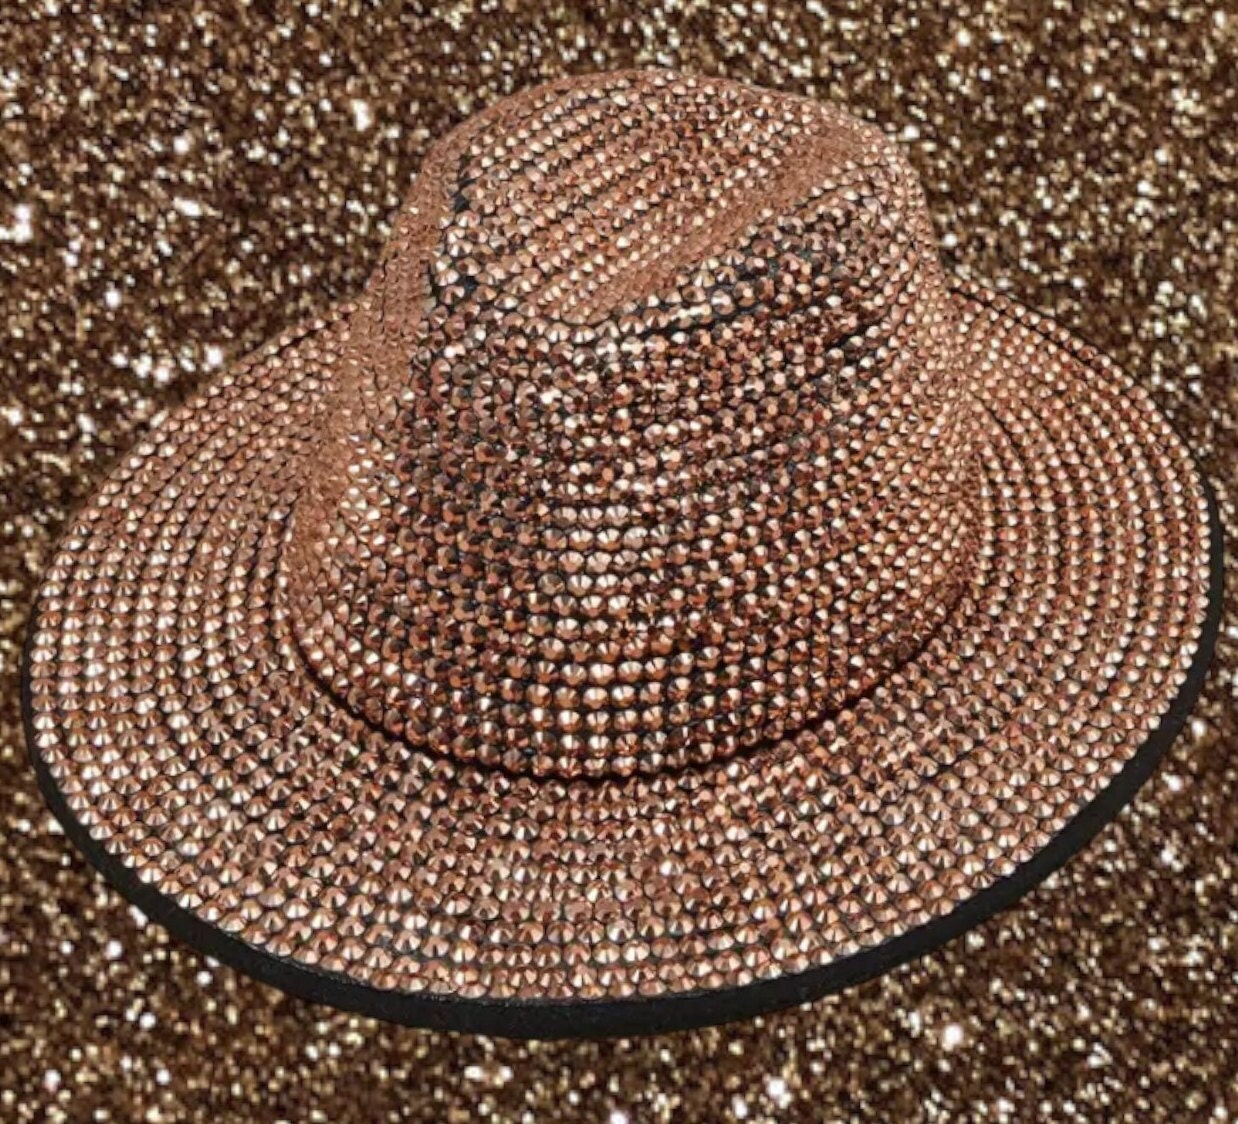 Louis Vuitton Men's Wicker Hat